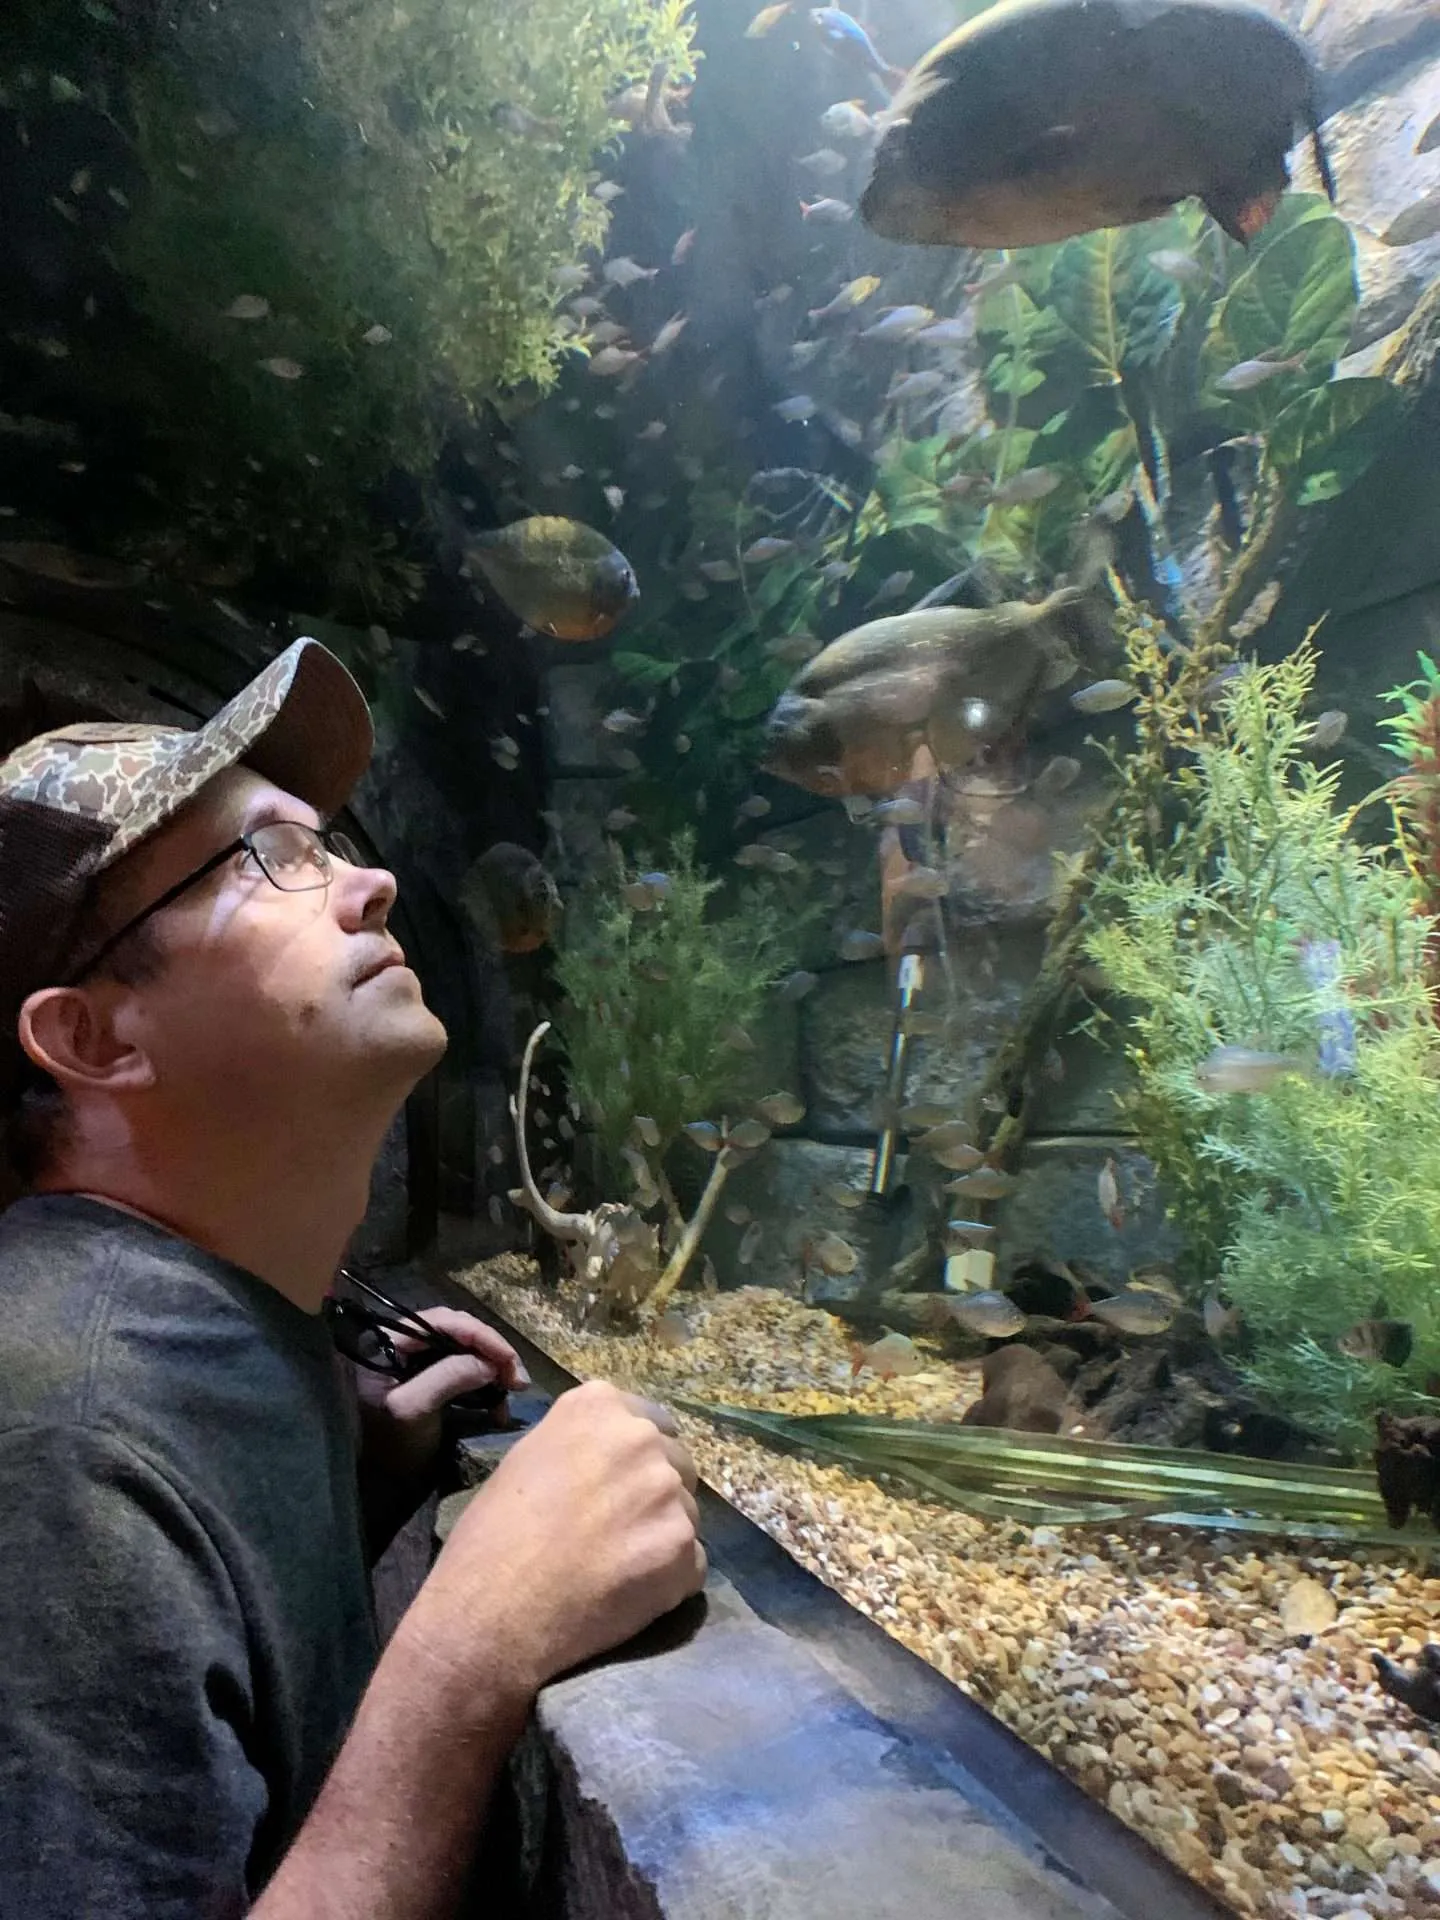 Visiting the Sea Life Aquarium in Dallas-Fort Worth